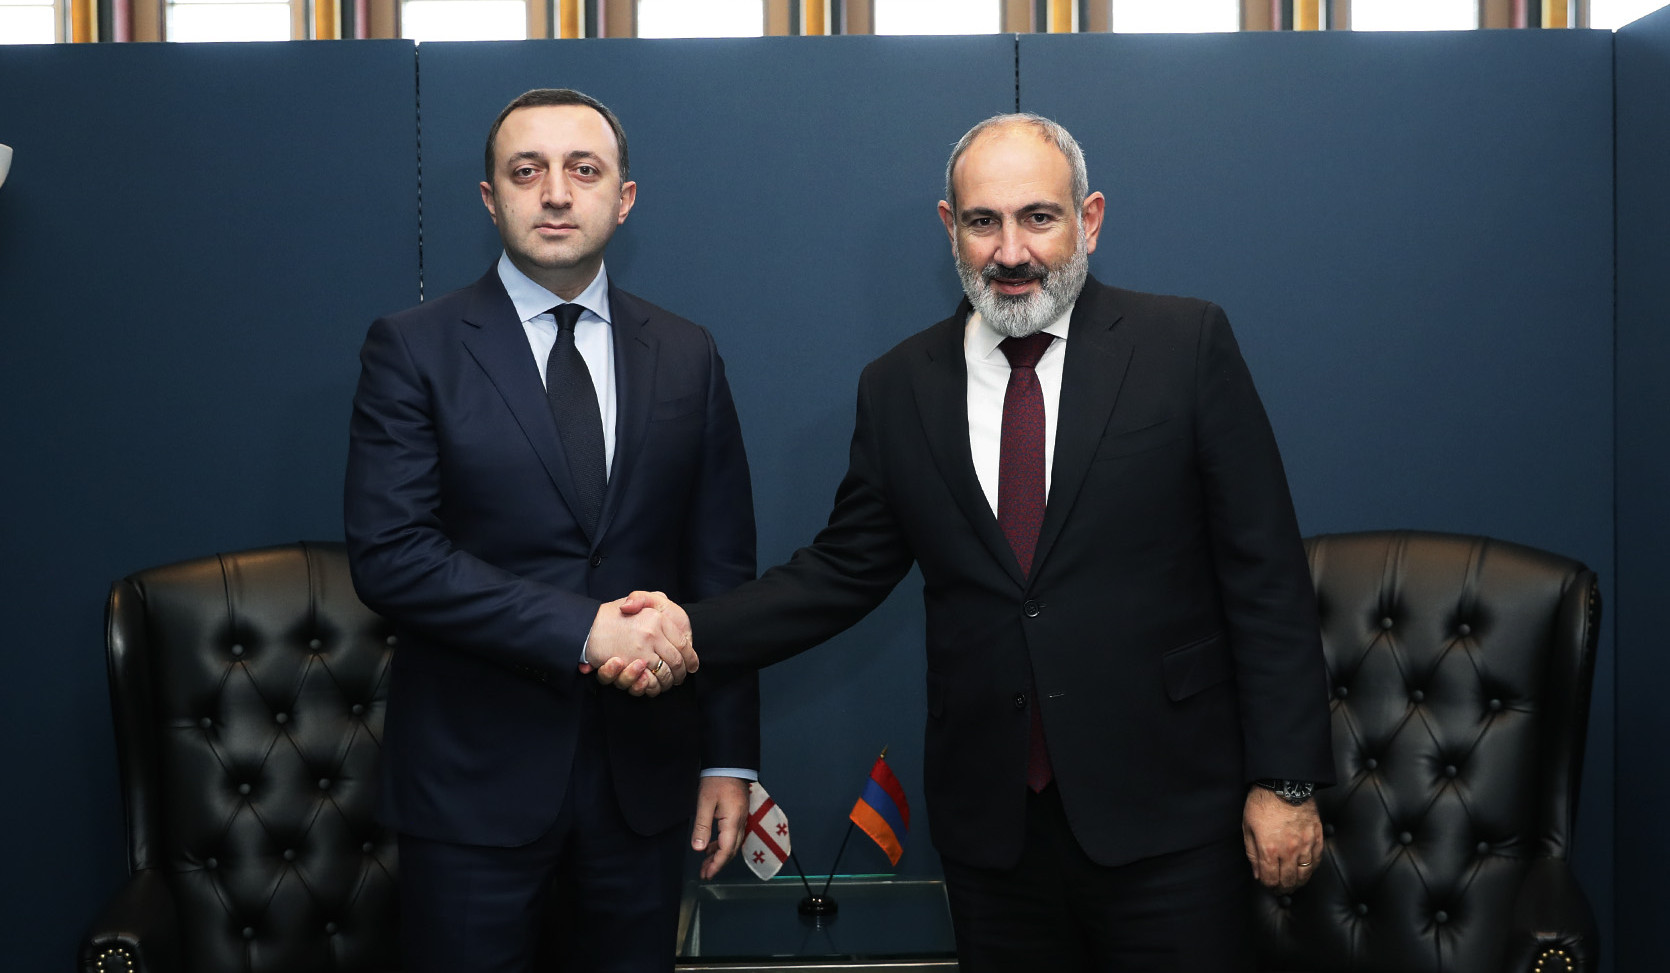 На встрече с премьер-министром РА Гарибашвили подтвердил готовность Грузии внести свой вклад в сохранение мира в регионе